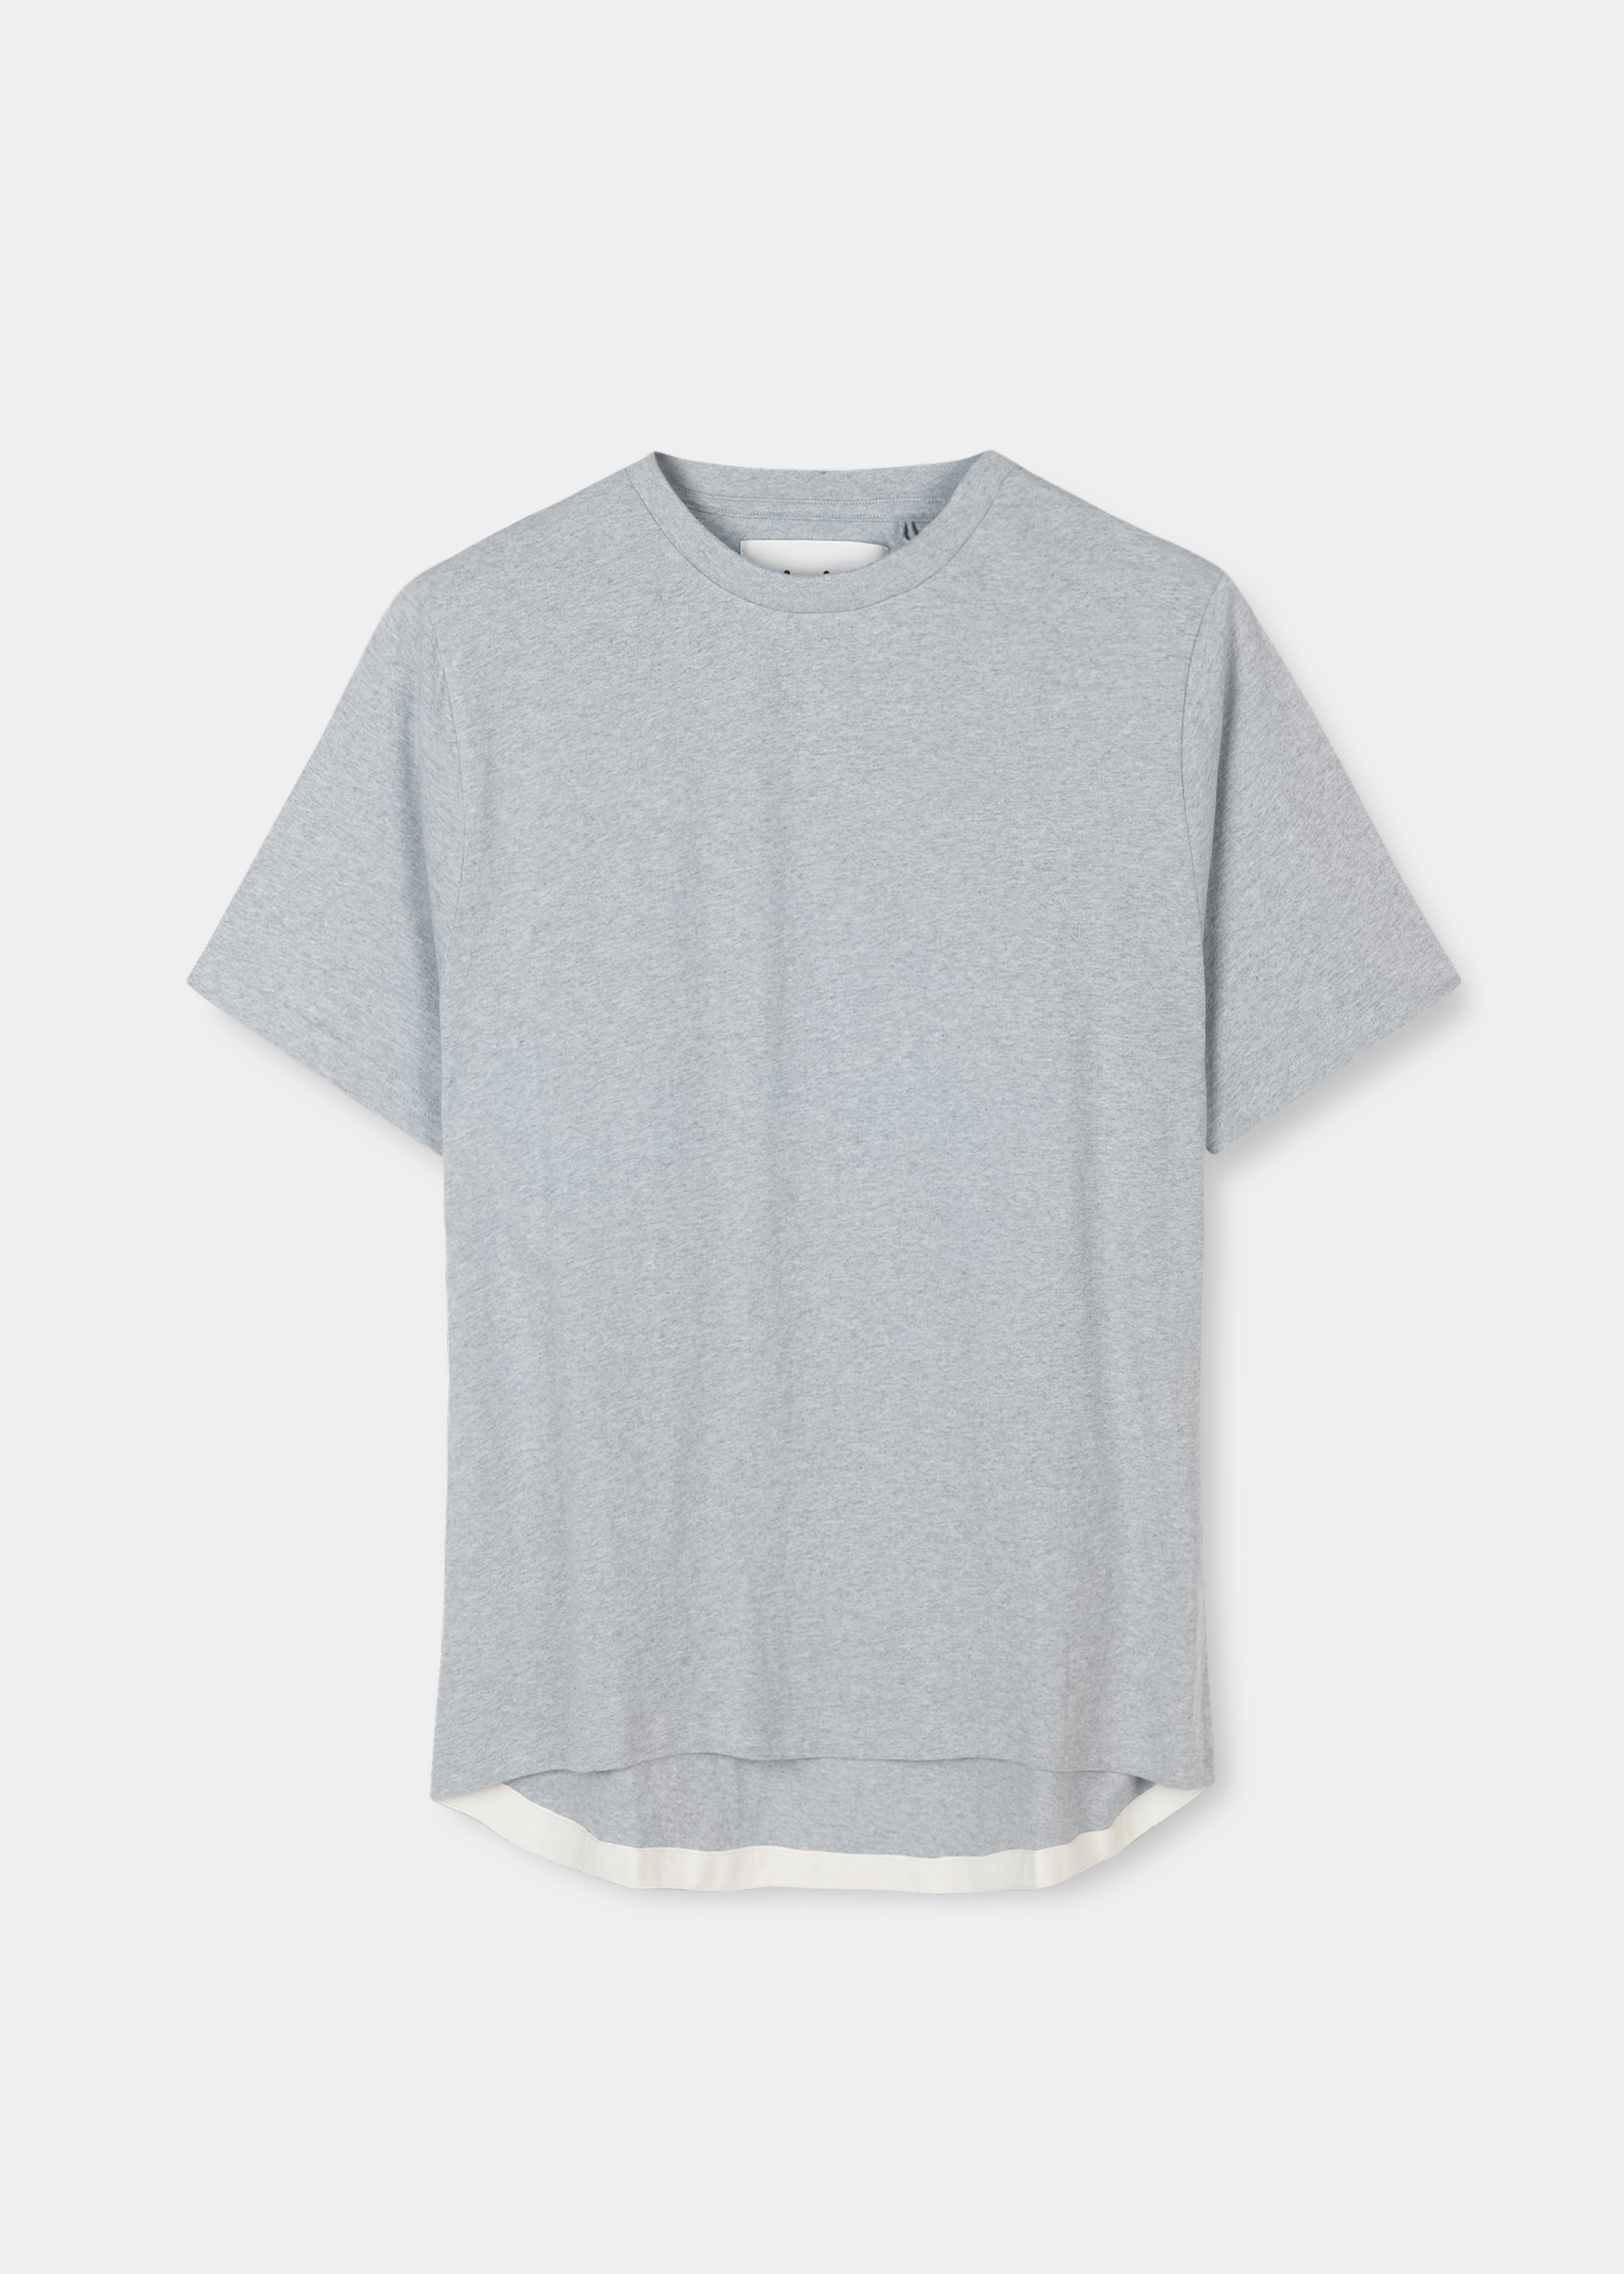 Blusen & T-Shirts - T-shirt - boxy